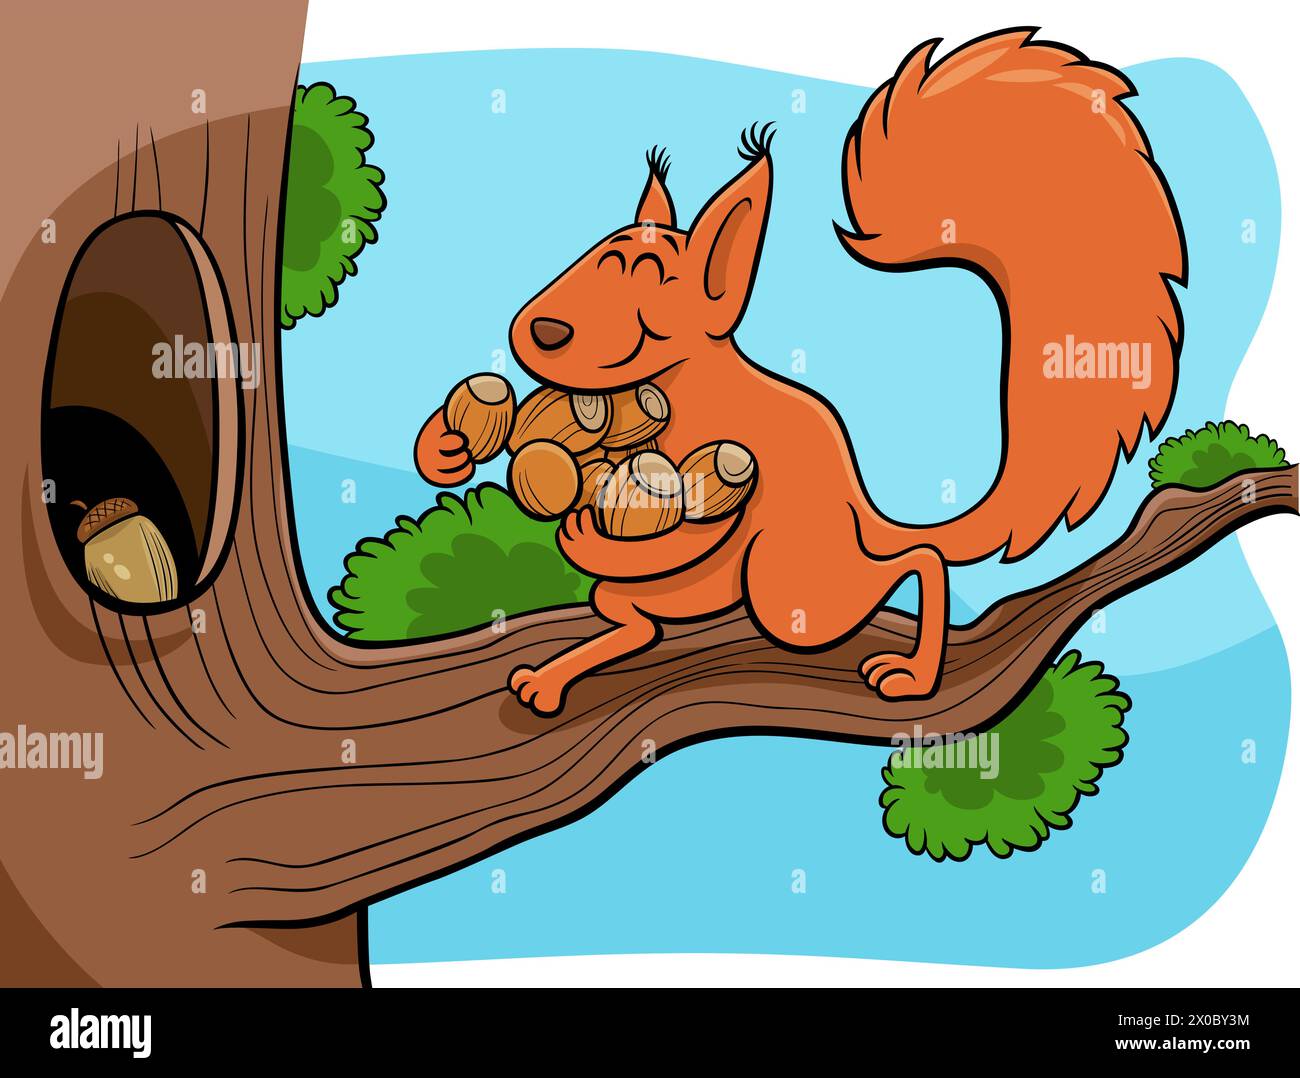 Ilustración de dibujos animados de gracioso personaje de ardilla animal llevando bellotas el hueco en el árbol Ilustración del Vector